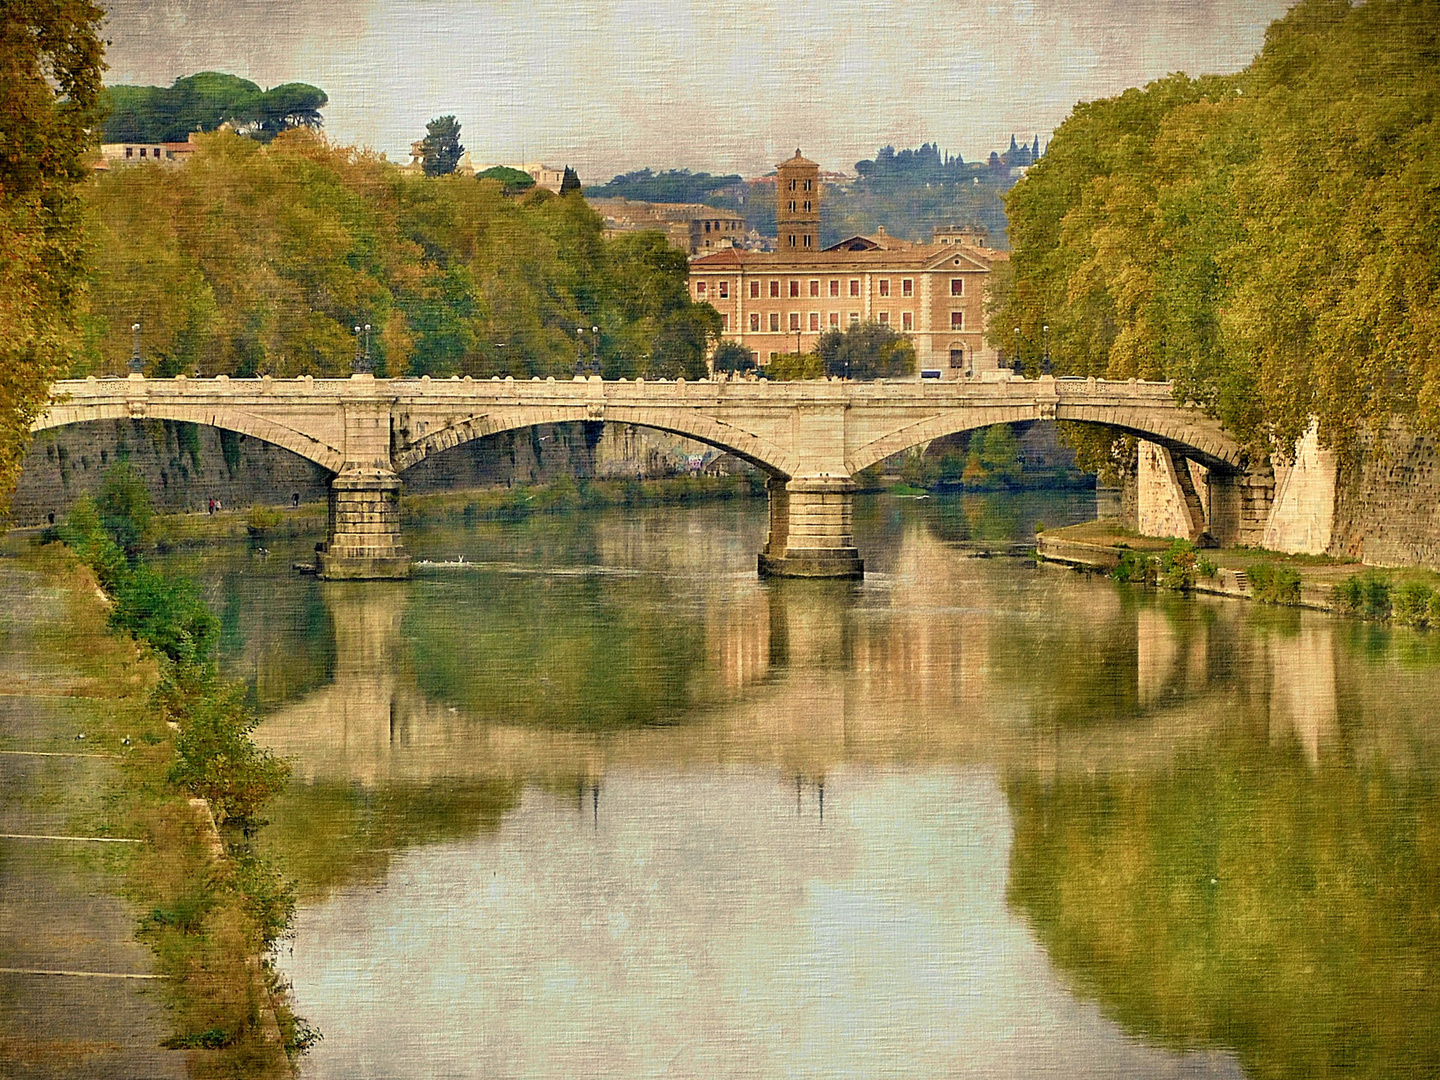 La grande bellezza: "Ponte Mazzini"